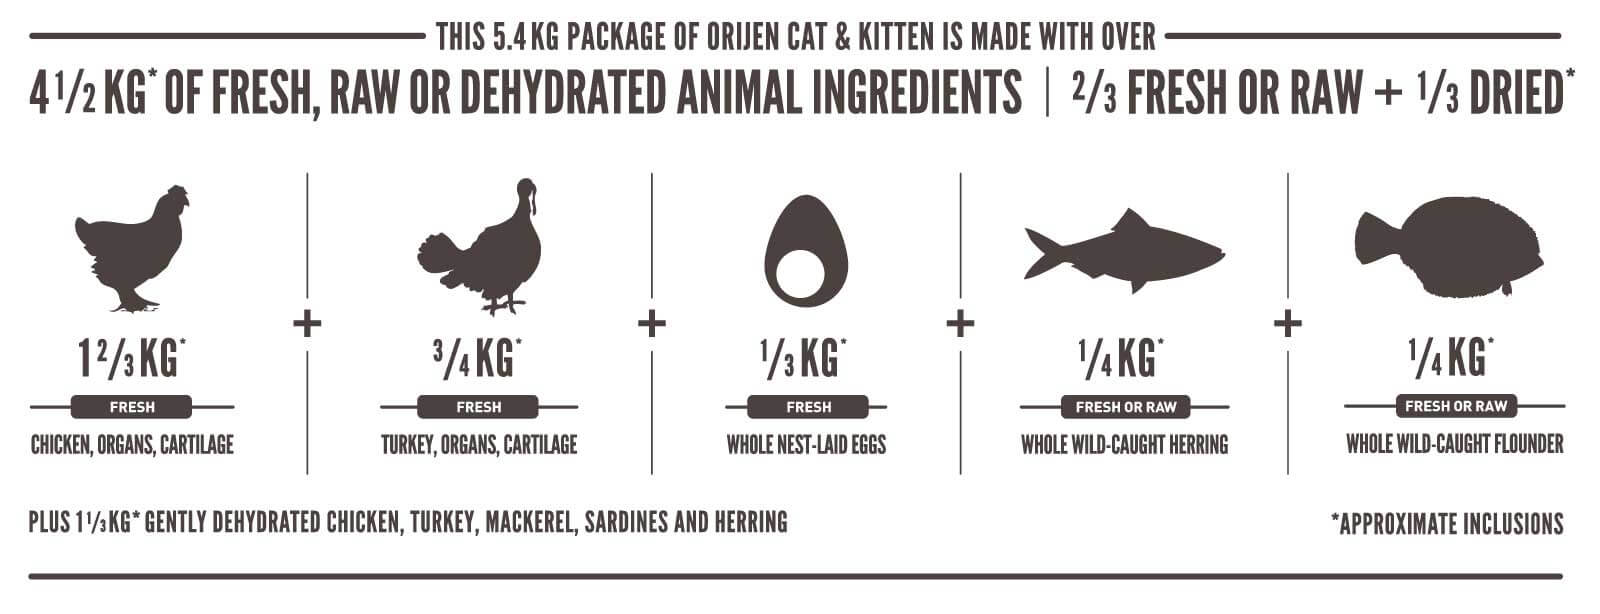 Ingredientes Orijen Cat & Kitten